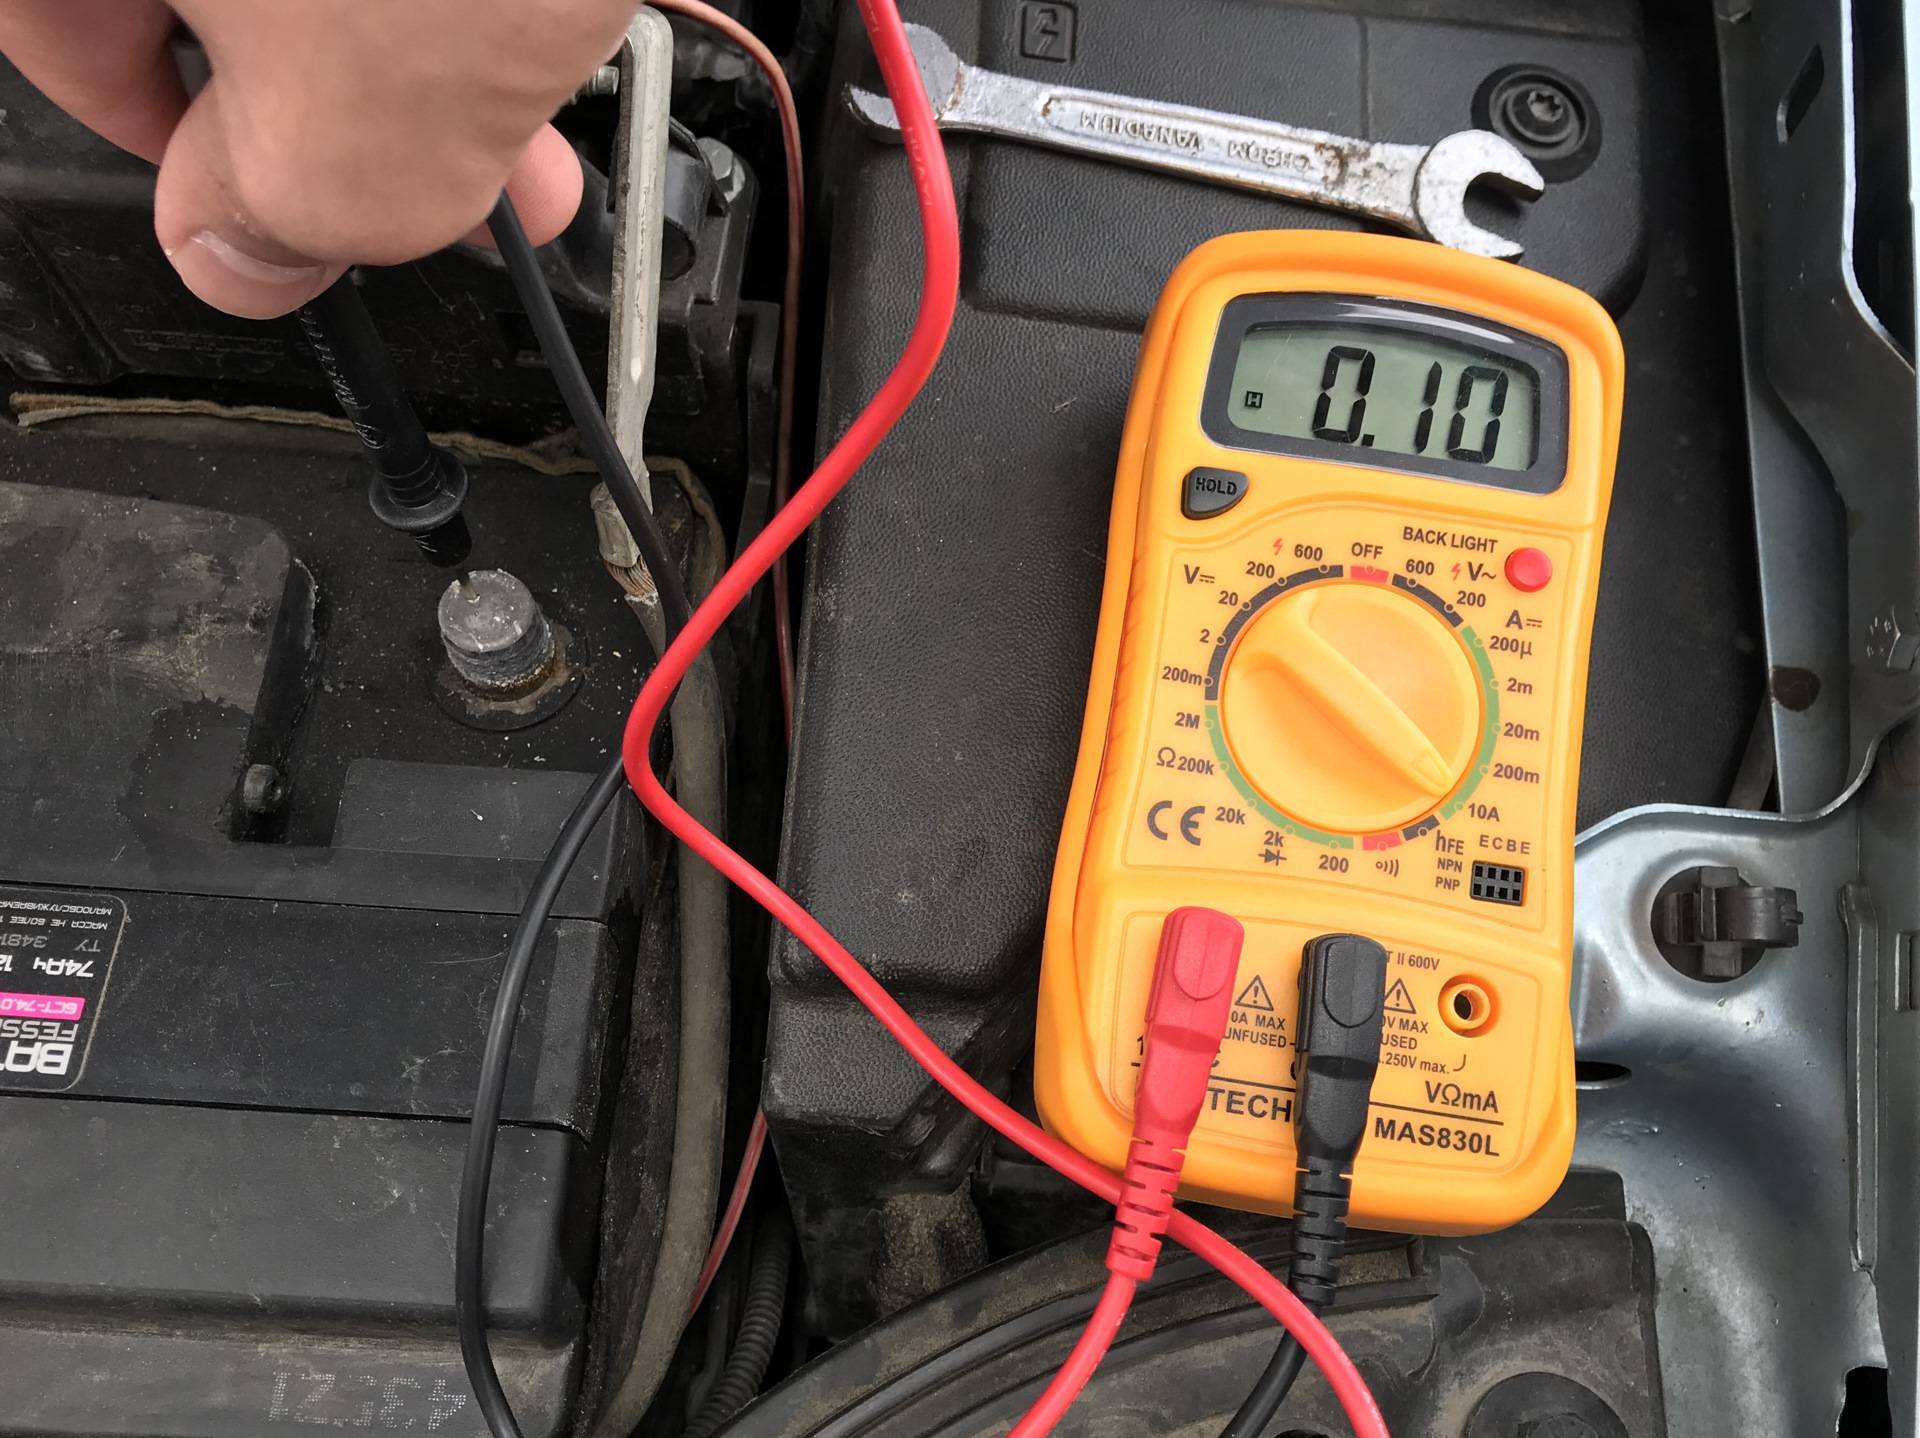 Как проверить утечку тока на автомобиле мультиметром: как найти потерю, замерить массу на аккумуляторе, потребление тока, напряжение в машине